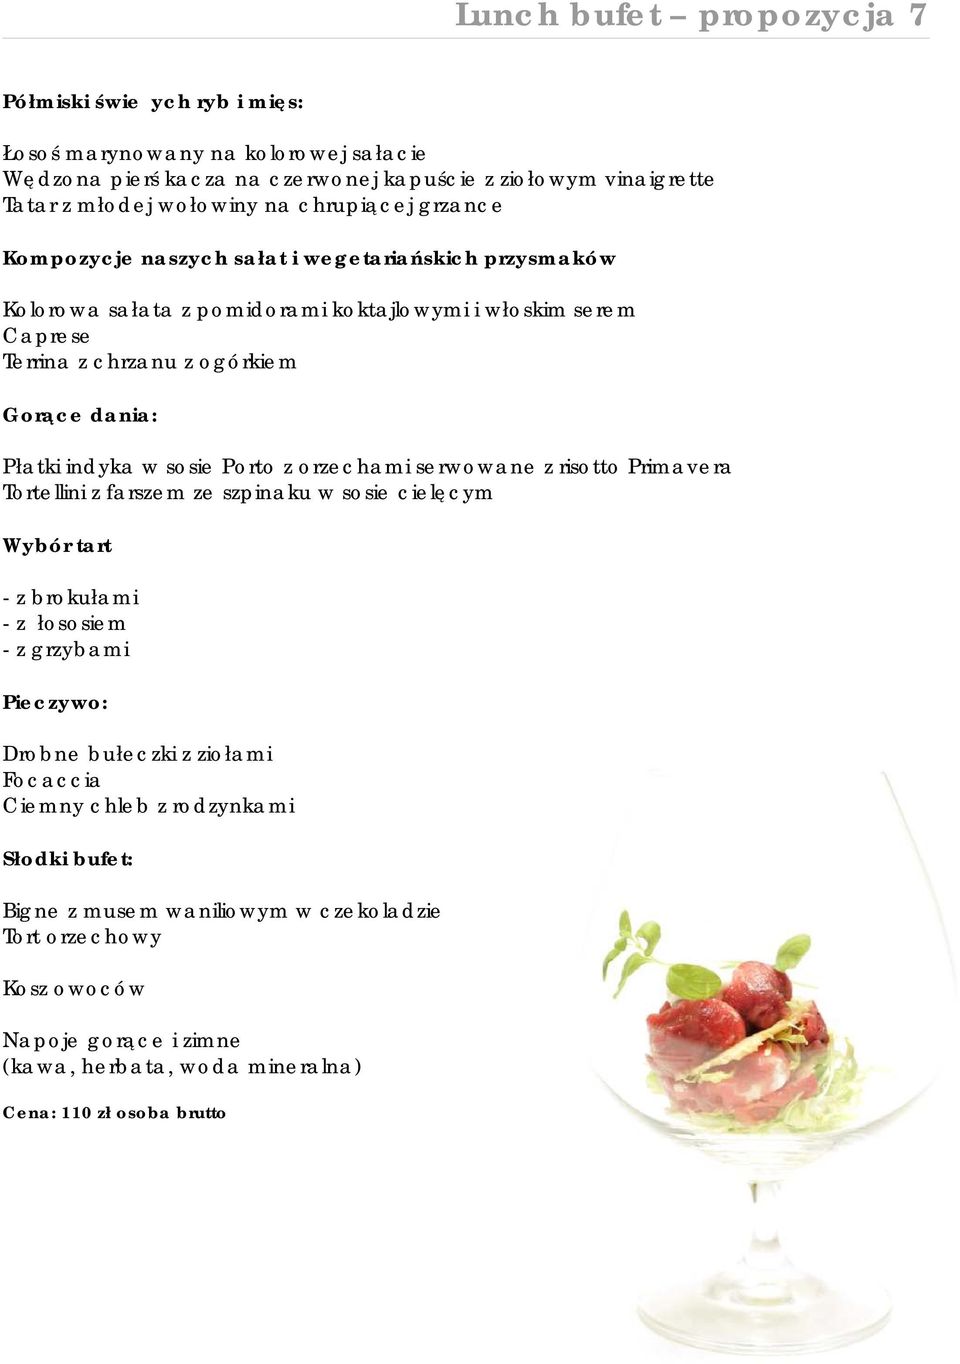 ogórkiem Gorące dania: Płatki indyka w sosie Porto z orzechami serwowane z risotto Primavera Tortellini z farszem ze szpinaku w sosie cielęcym Wybór tart - z brokułami - z